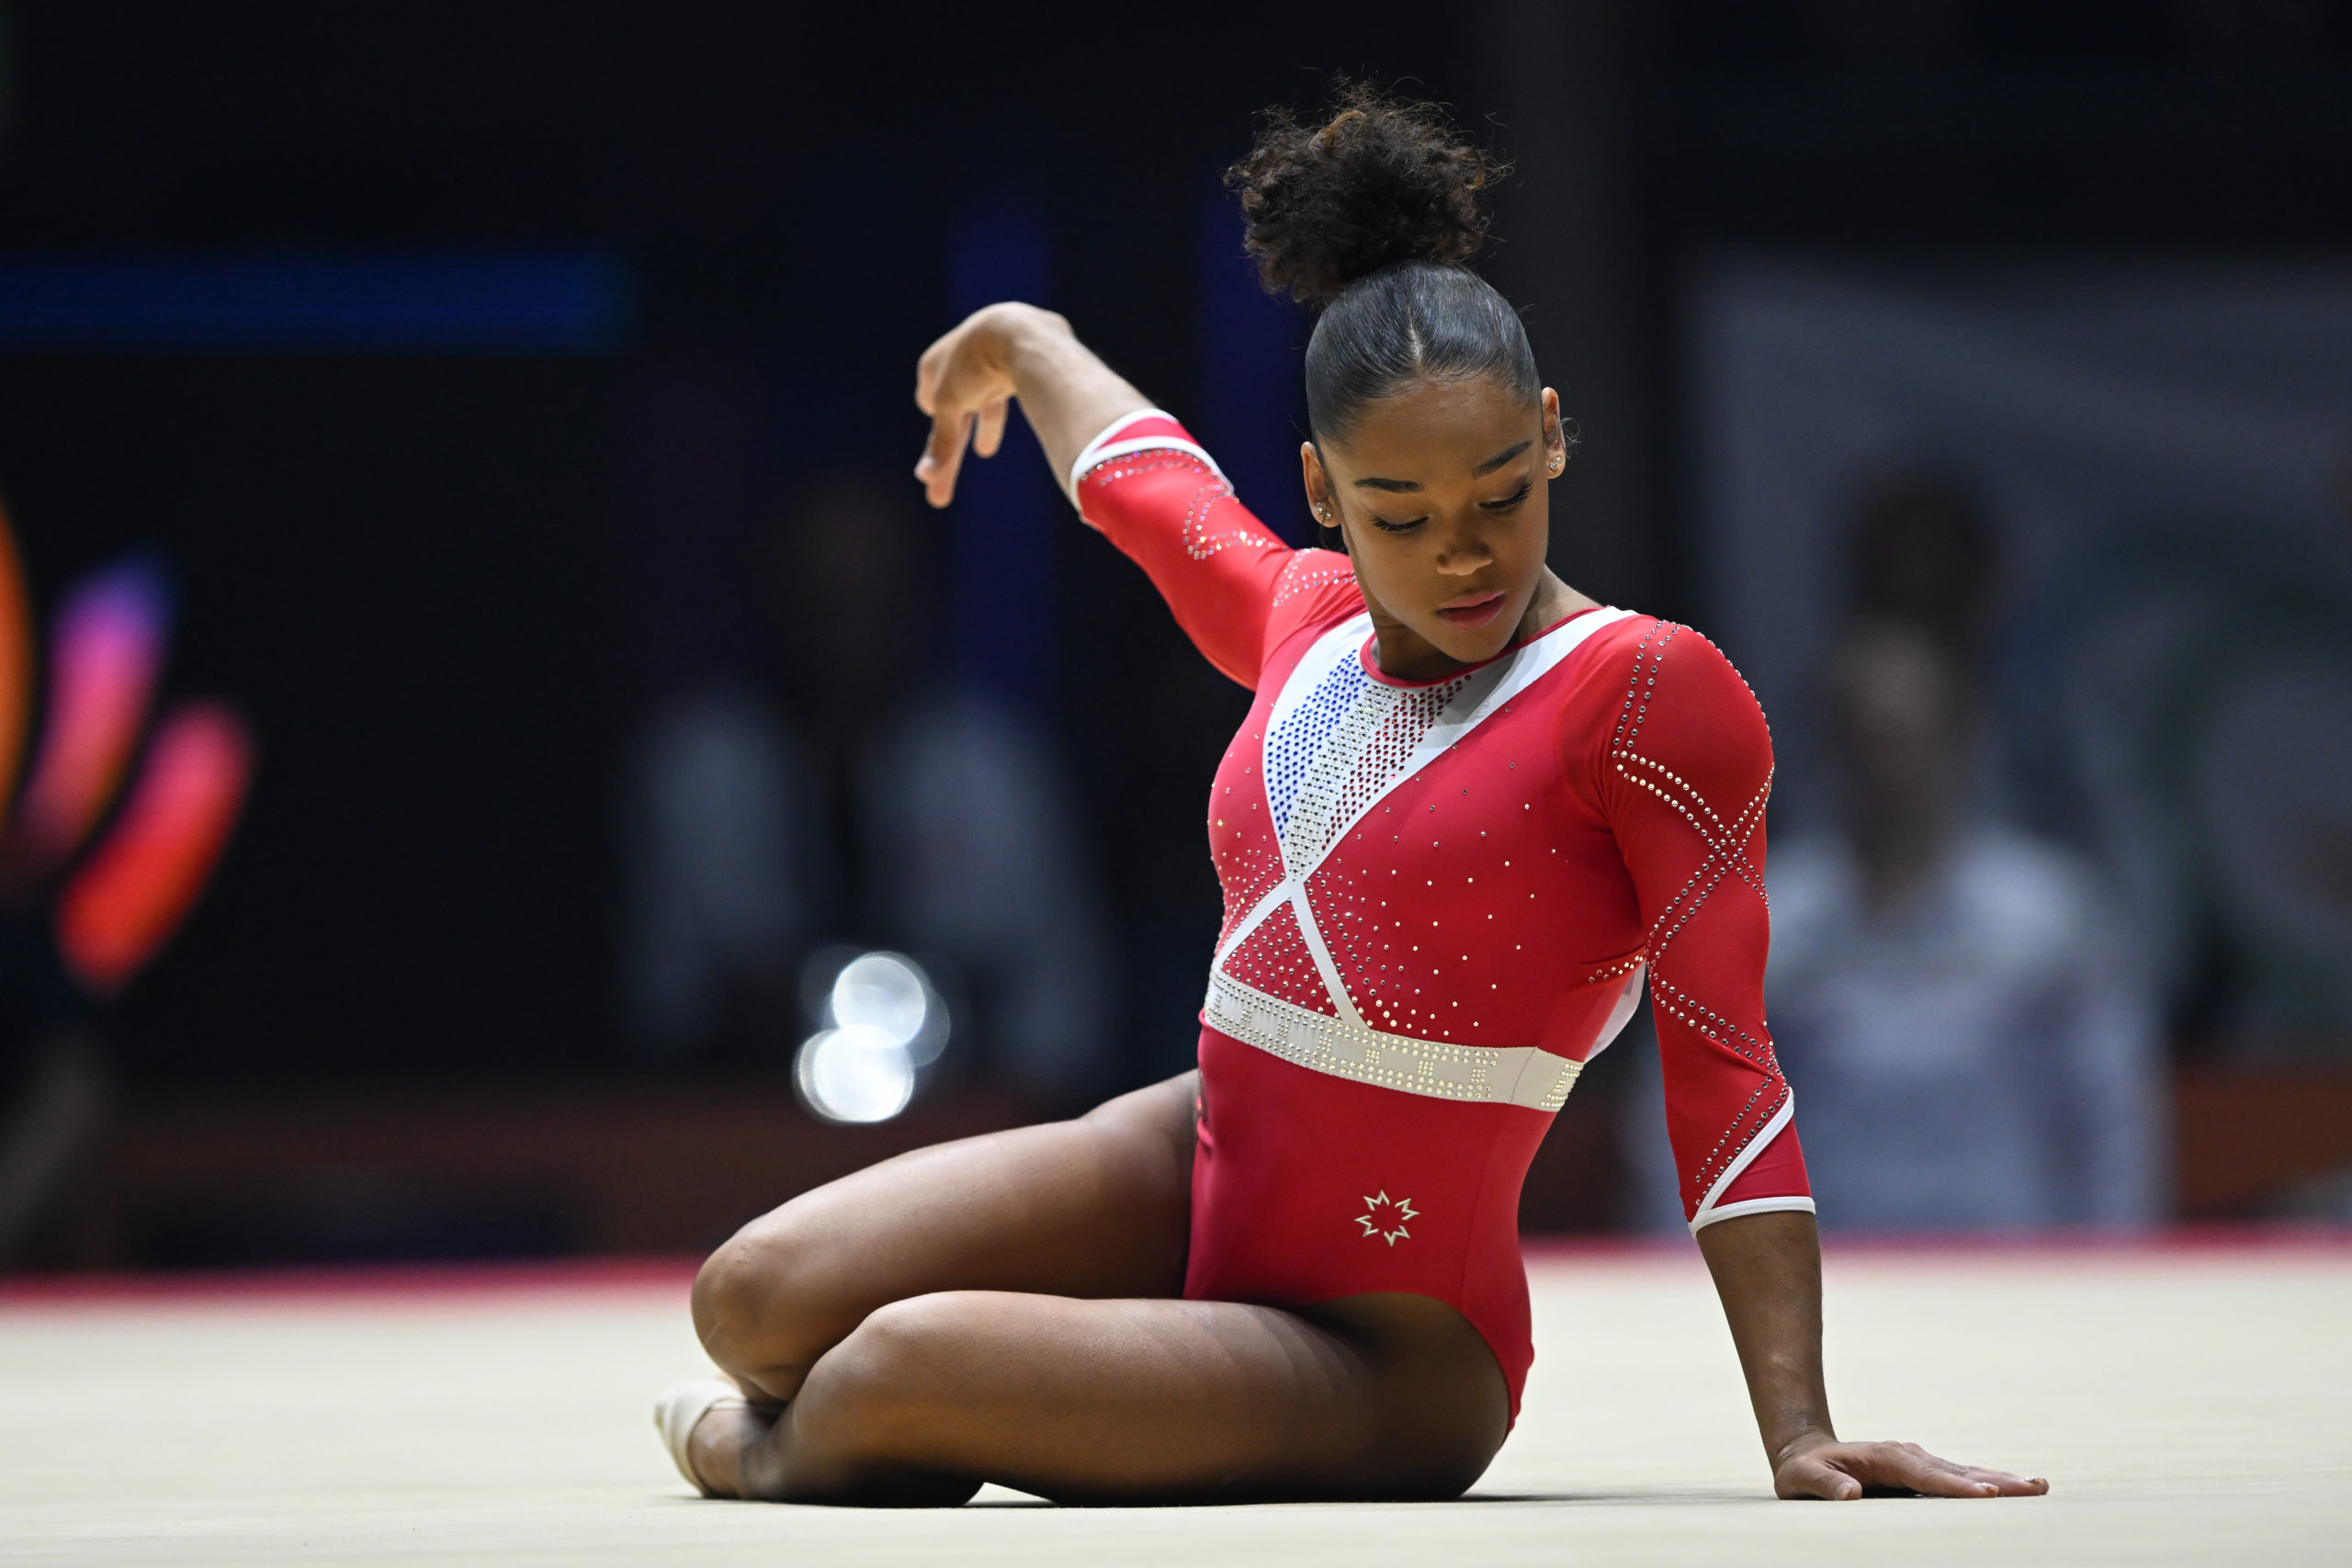 Elite gymnastics roundup Melanie de Jesus dos Santos headlining U.S. Classic and more